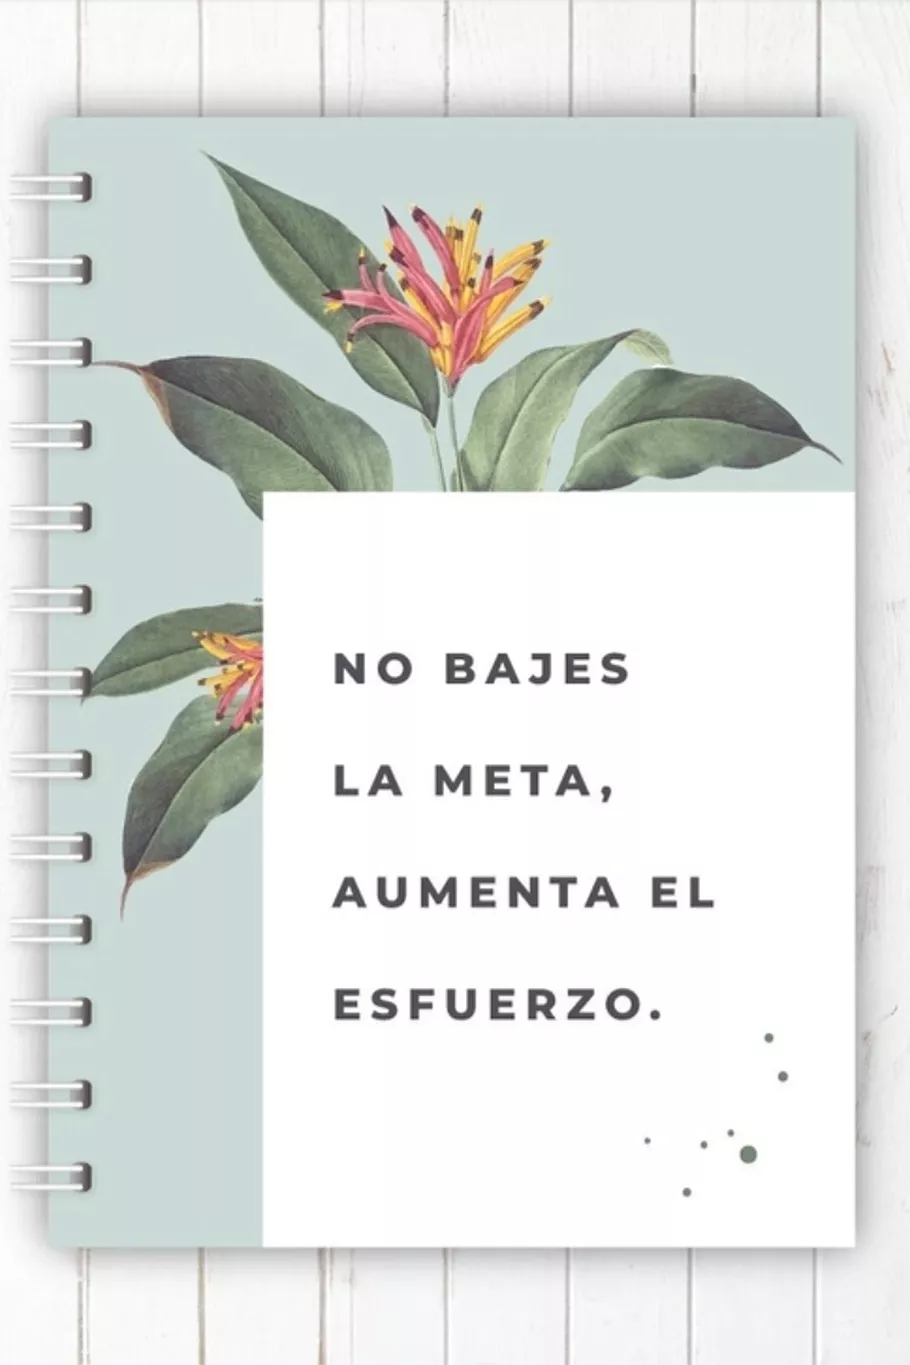 Los cuadernos nunca son suficientes y si tienen mensajes que nos motivan, ¡mucho mejor! En Alas en Papel, @alasenpapel_ tienen muchos diseños y opciones. Cuaderno tapa dura, anillado y 50 hojas, $900.